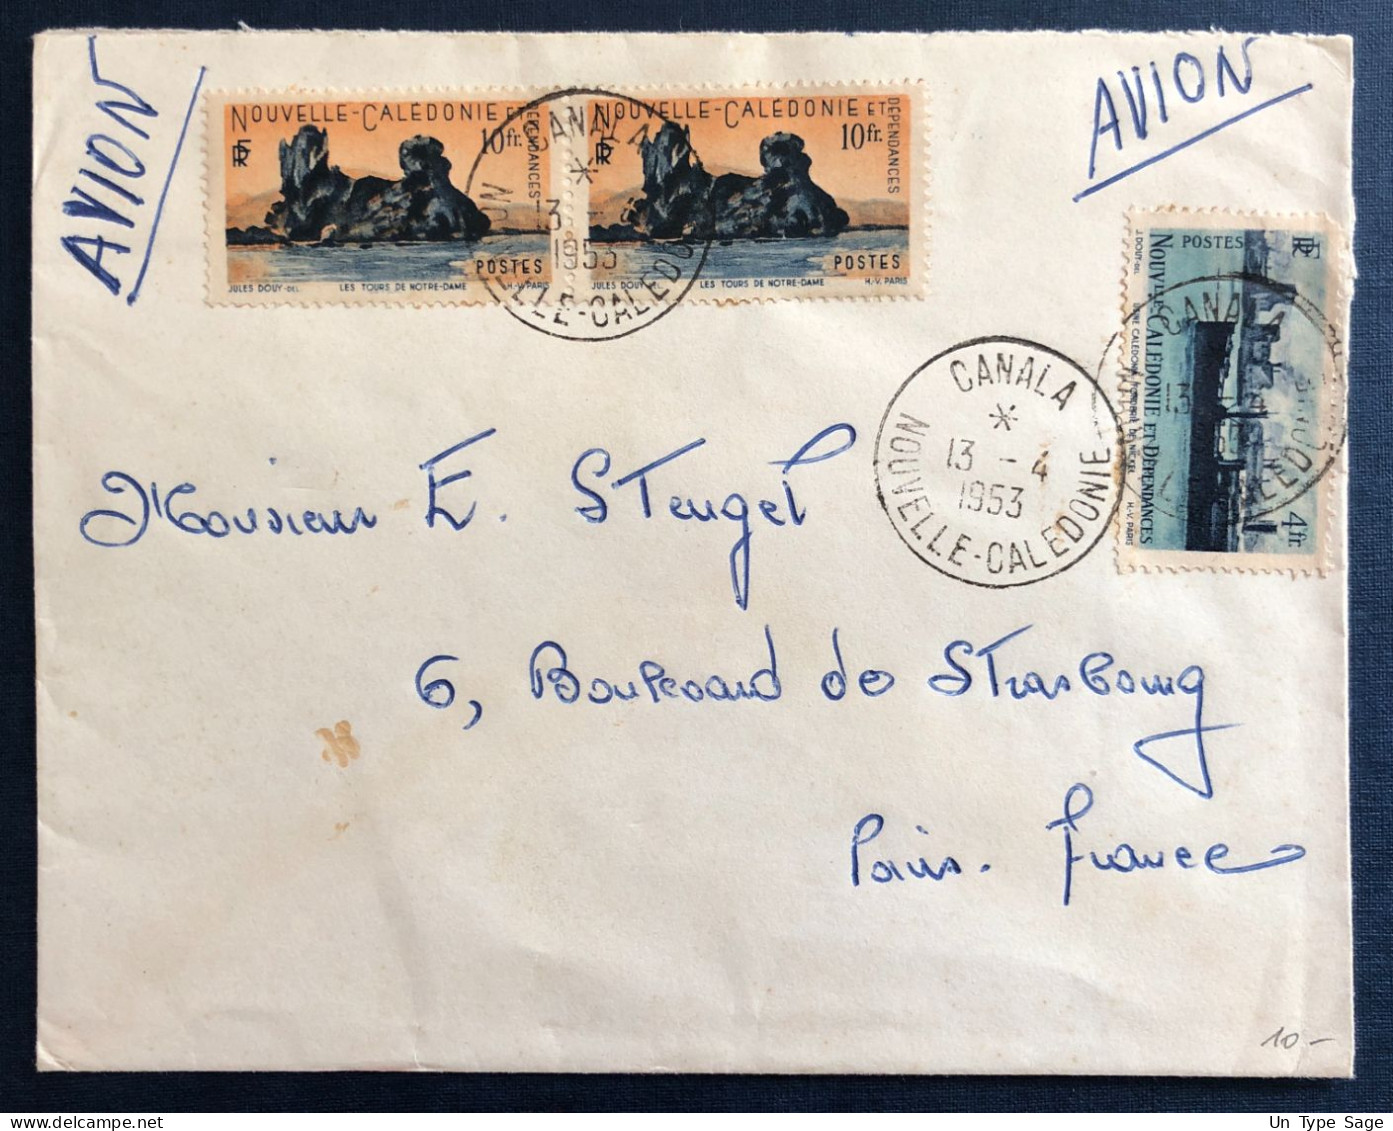 Nouvelle-Calédonie, Divers Sur Enveloppe TAD CANALA 13.4.1953 - (B3261) - Covers & Documents